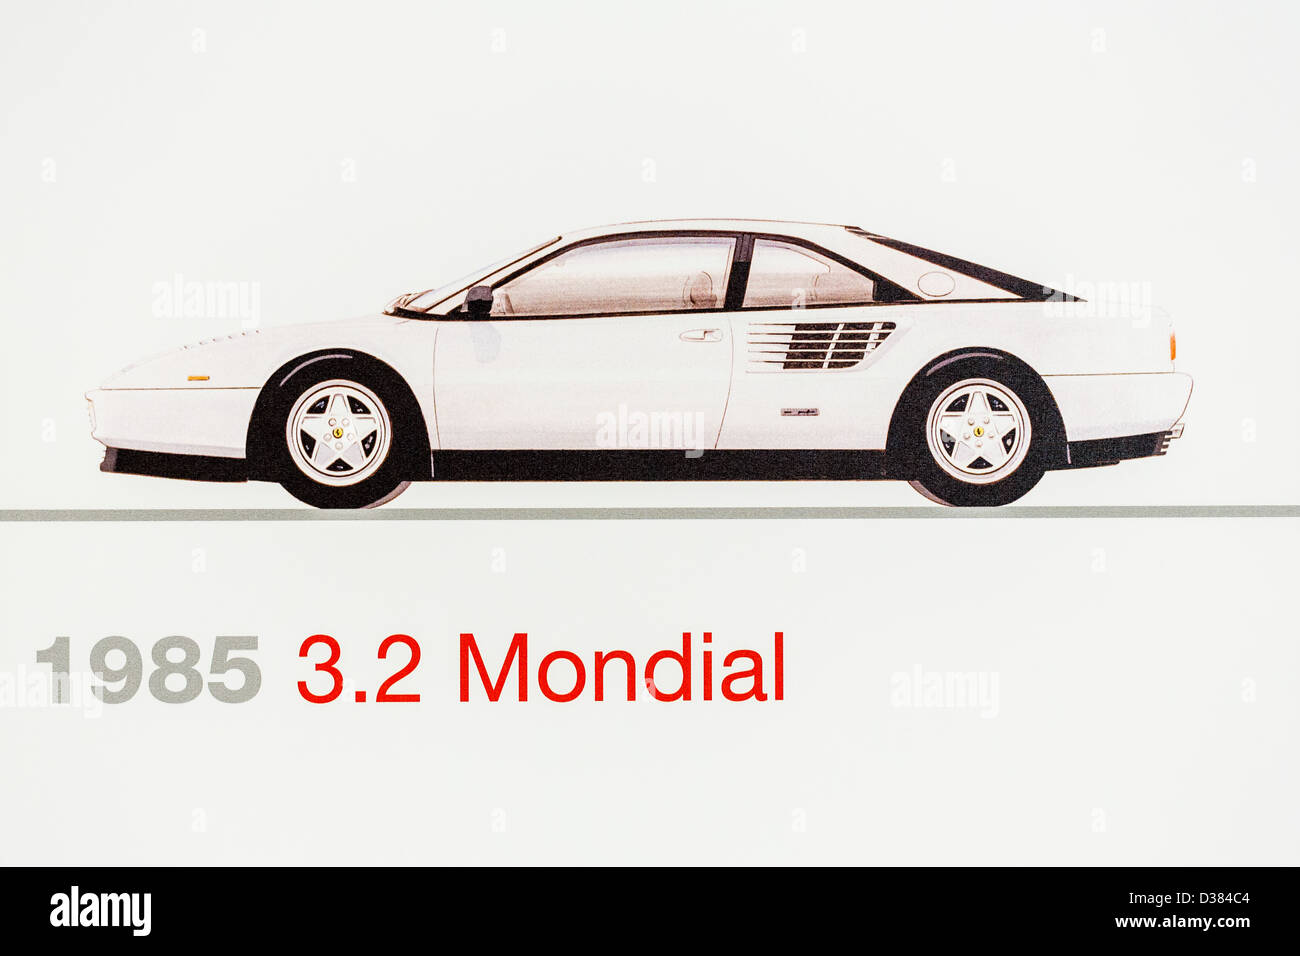 Graphic representation of a 1985 Ferrari 3.2 Mondial, Ferrari Museum, Maranello, Italy Stock Photo